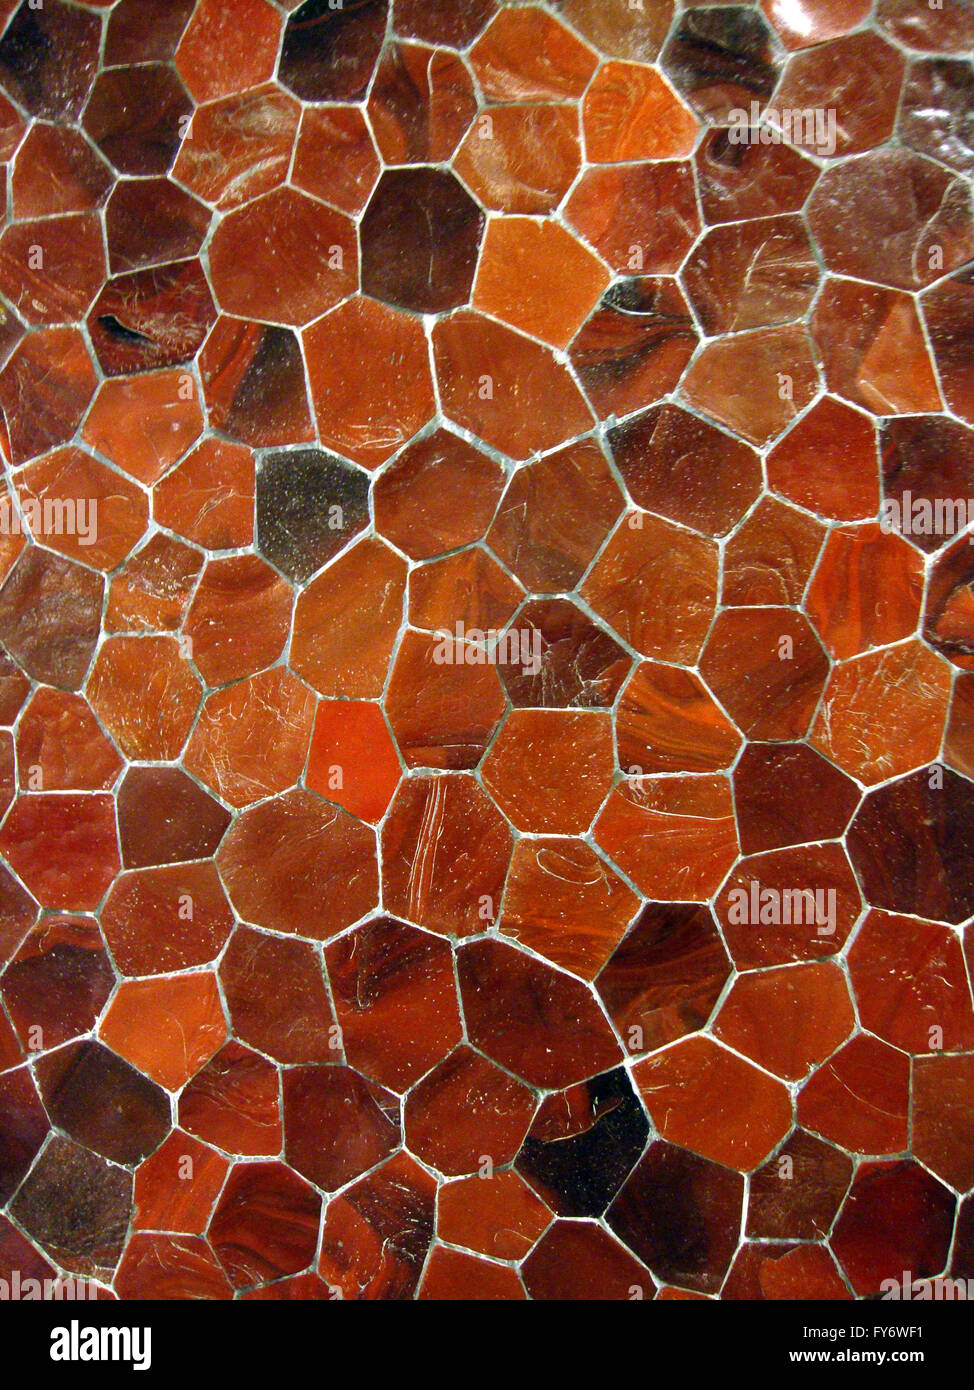 Shades of Orange tile mosaic pattern Stock Photo